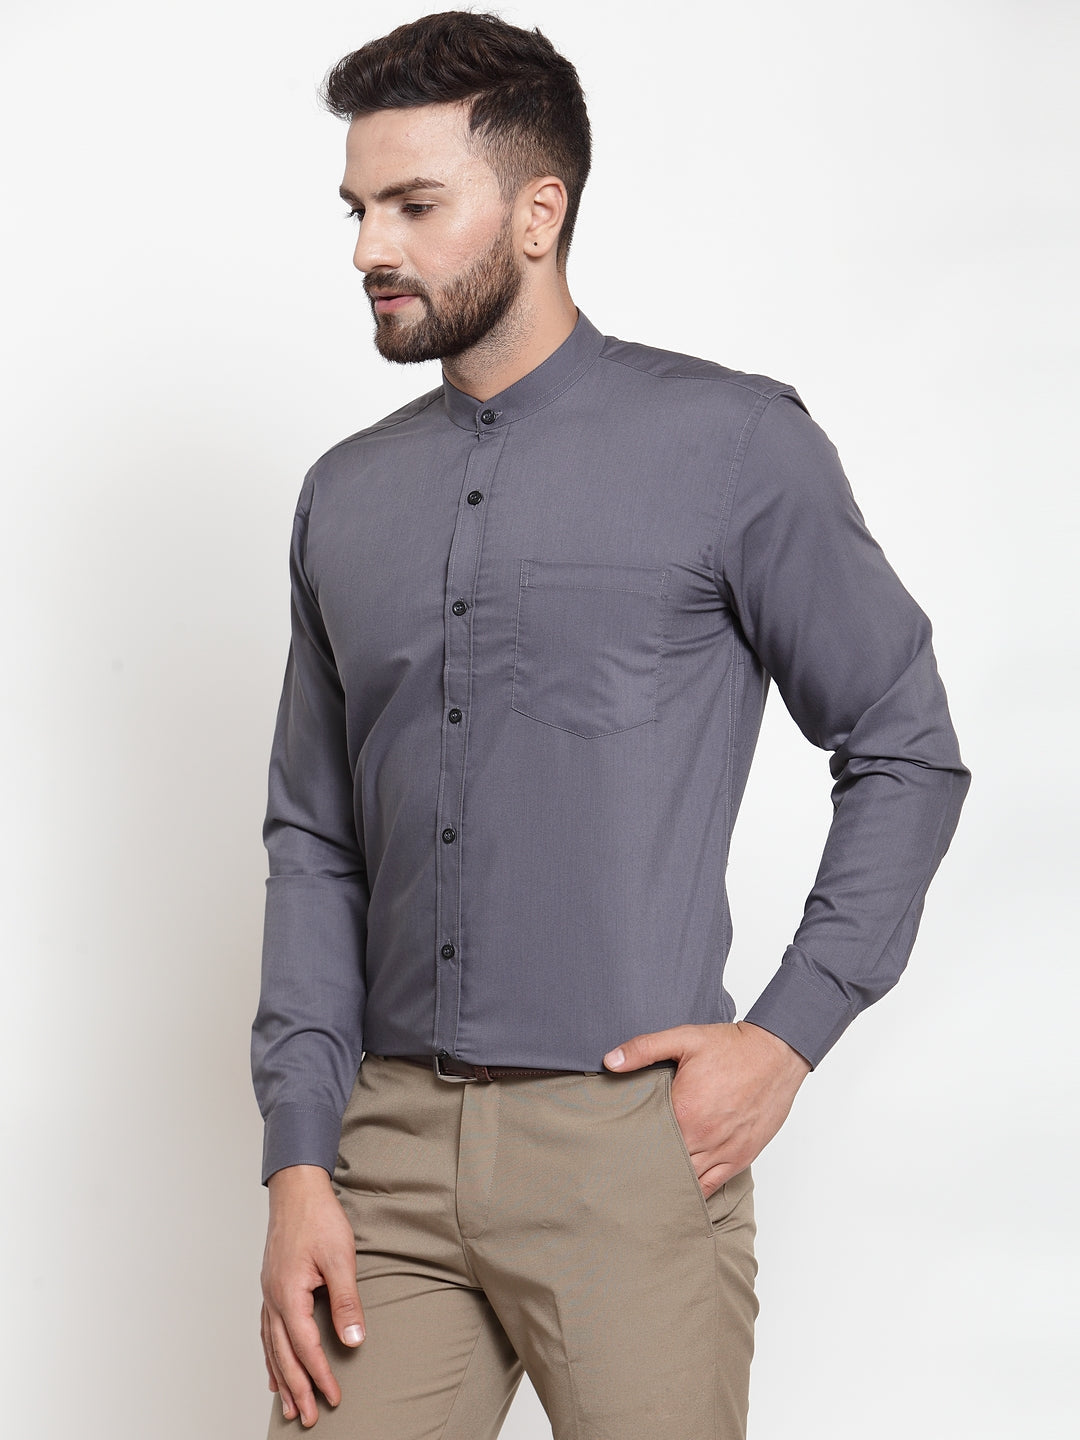 Men's Grey Cotton Solid Mandarin Collar Formal Shirts ( SF 726Grey ) - Jainish